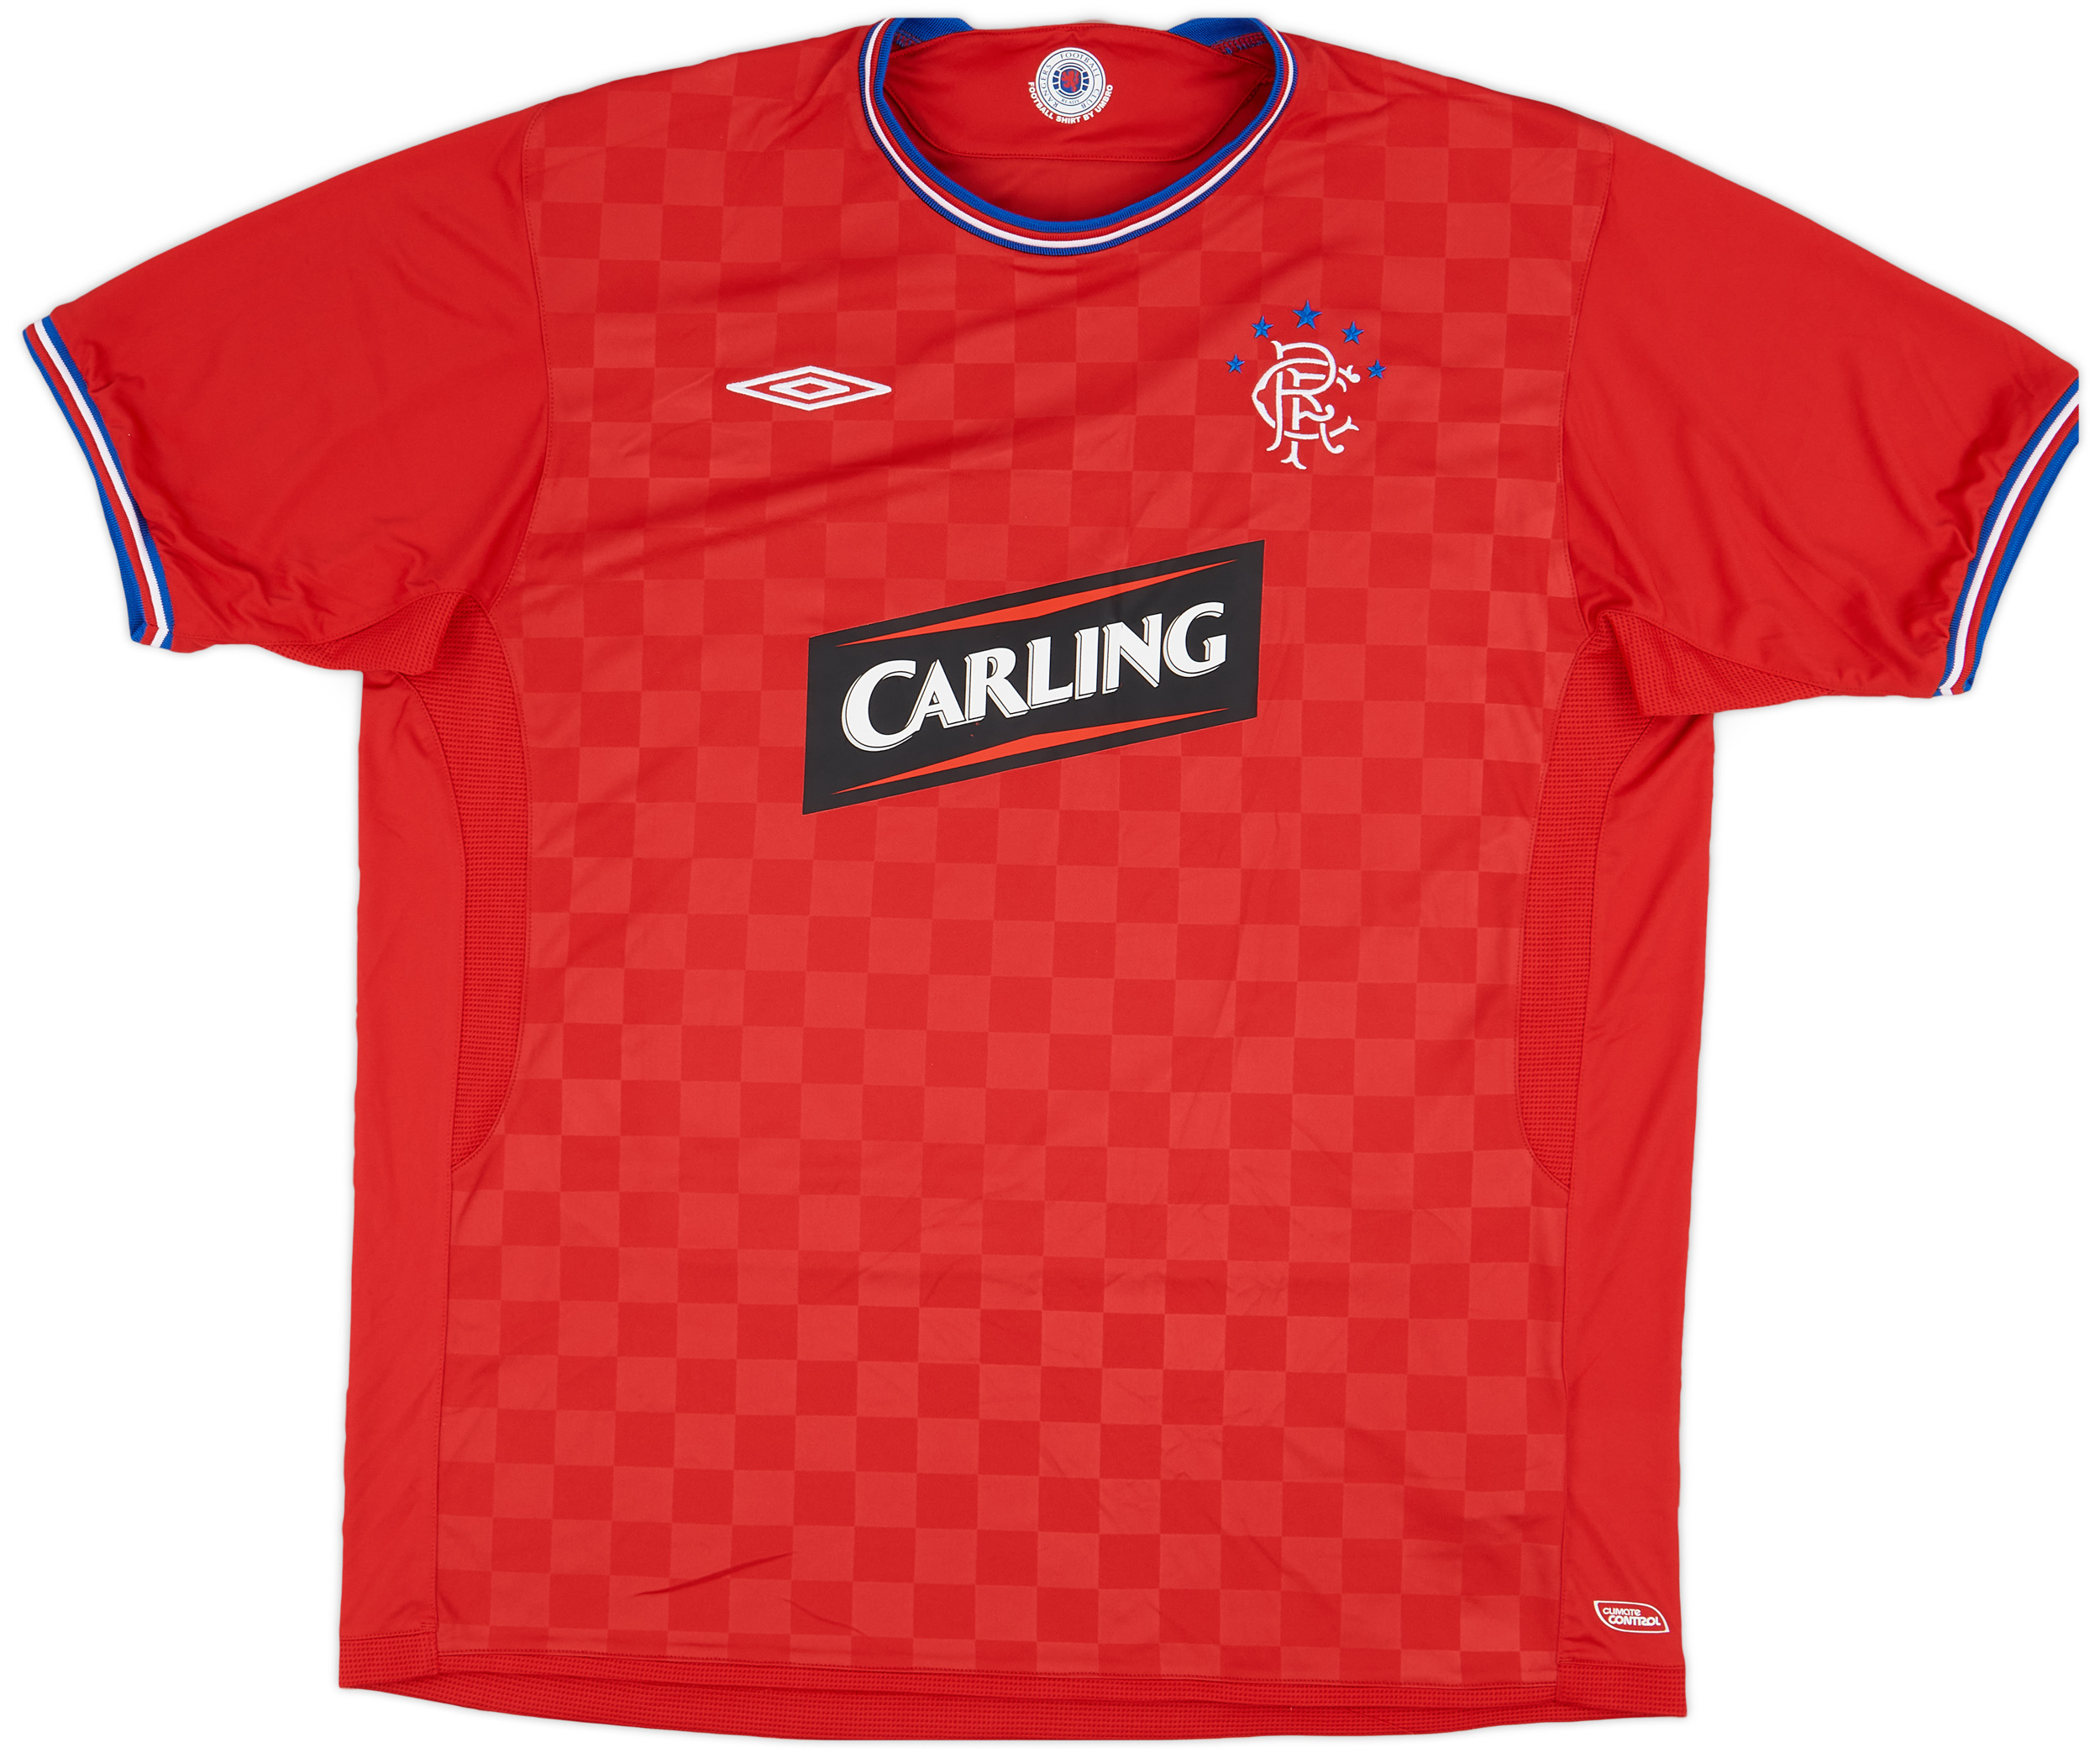 2009-10 Rangers Away Shirt - 8/10 - ()